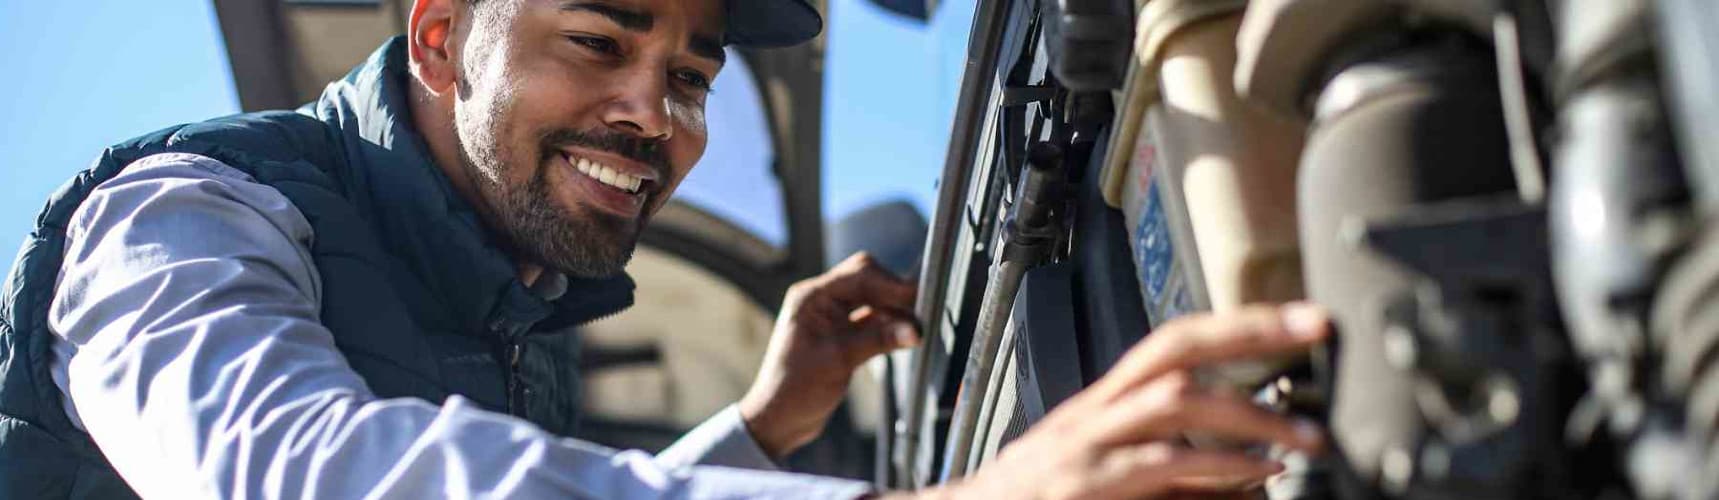 manutenção preventiva e prevenção de acidentes: um mecânico analisa o caminhão